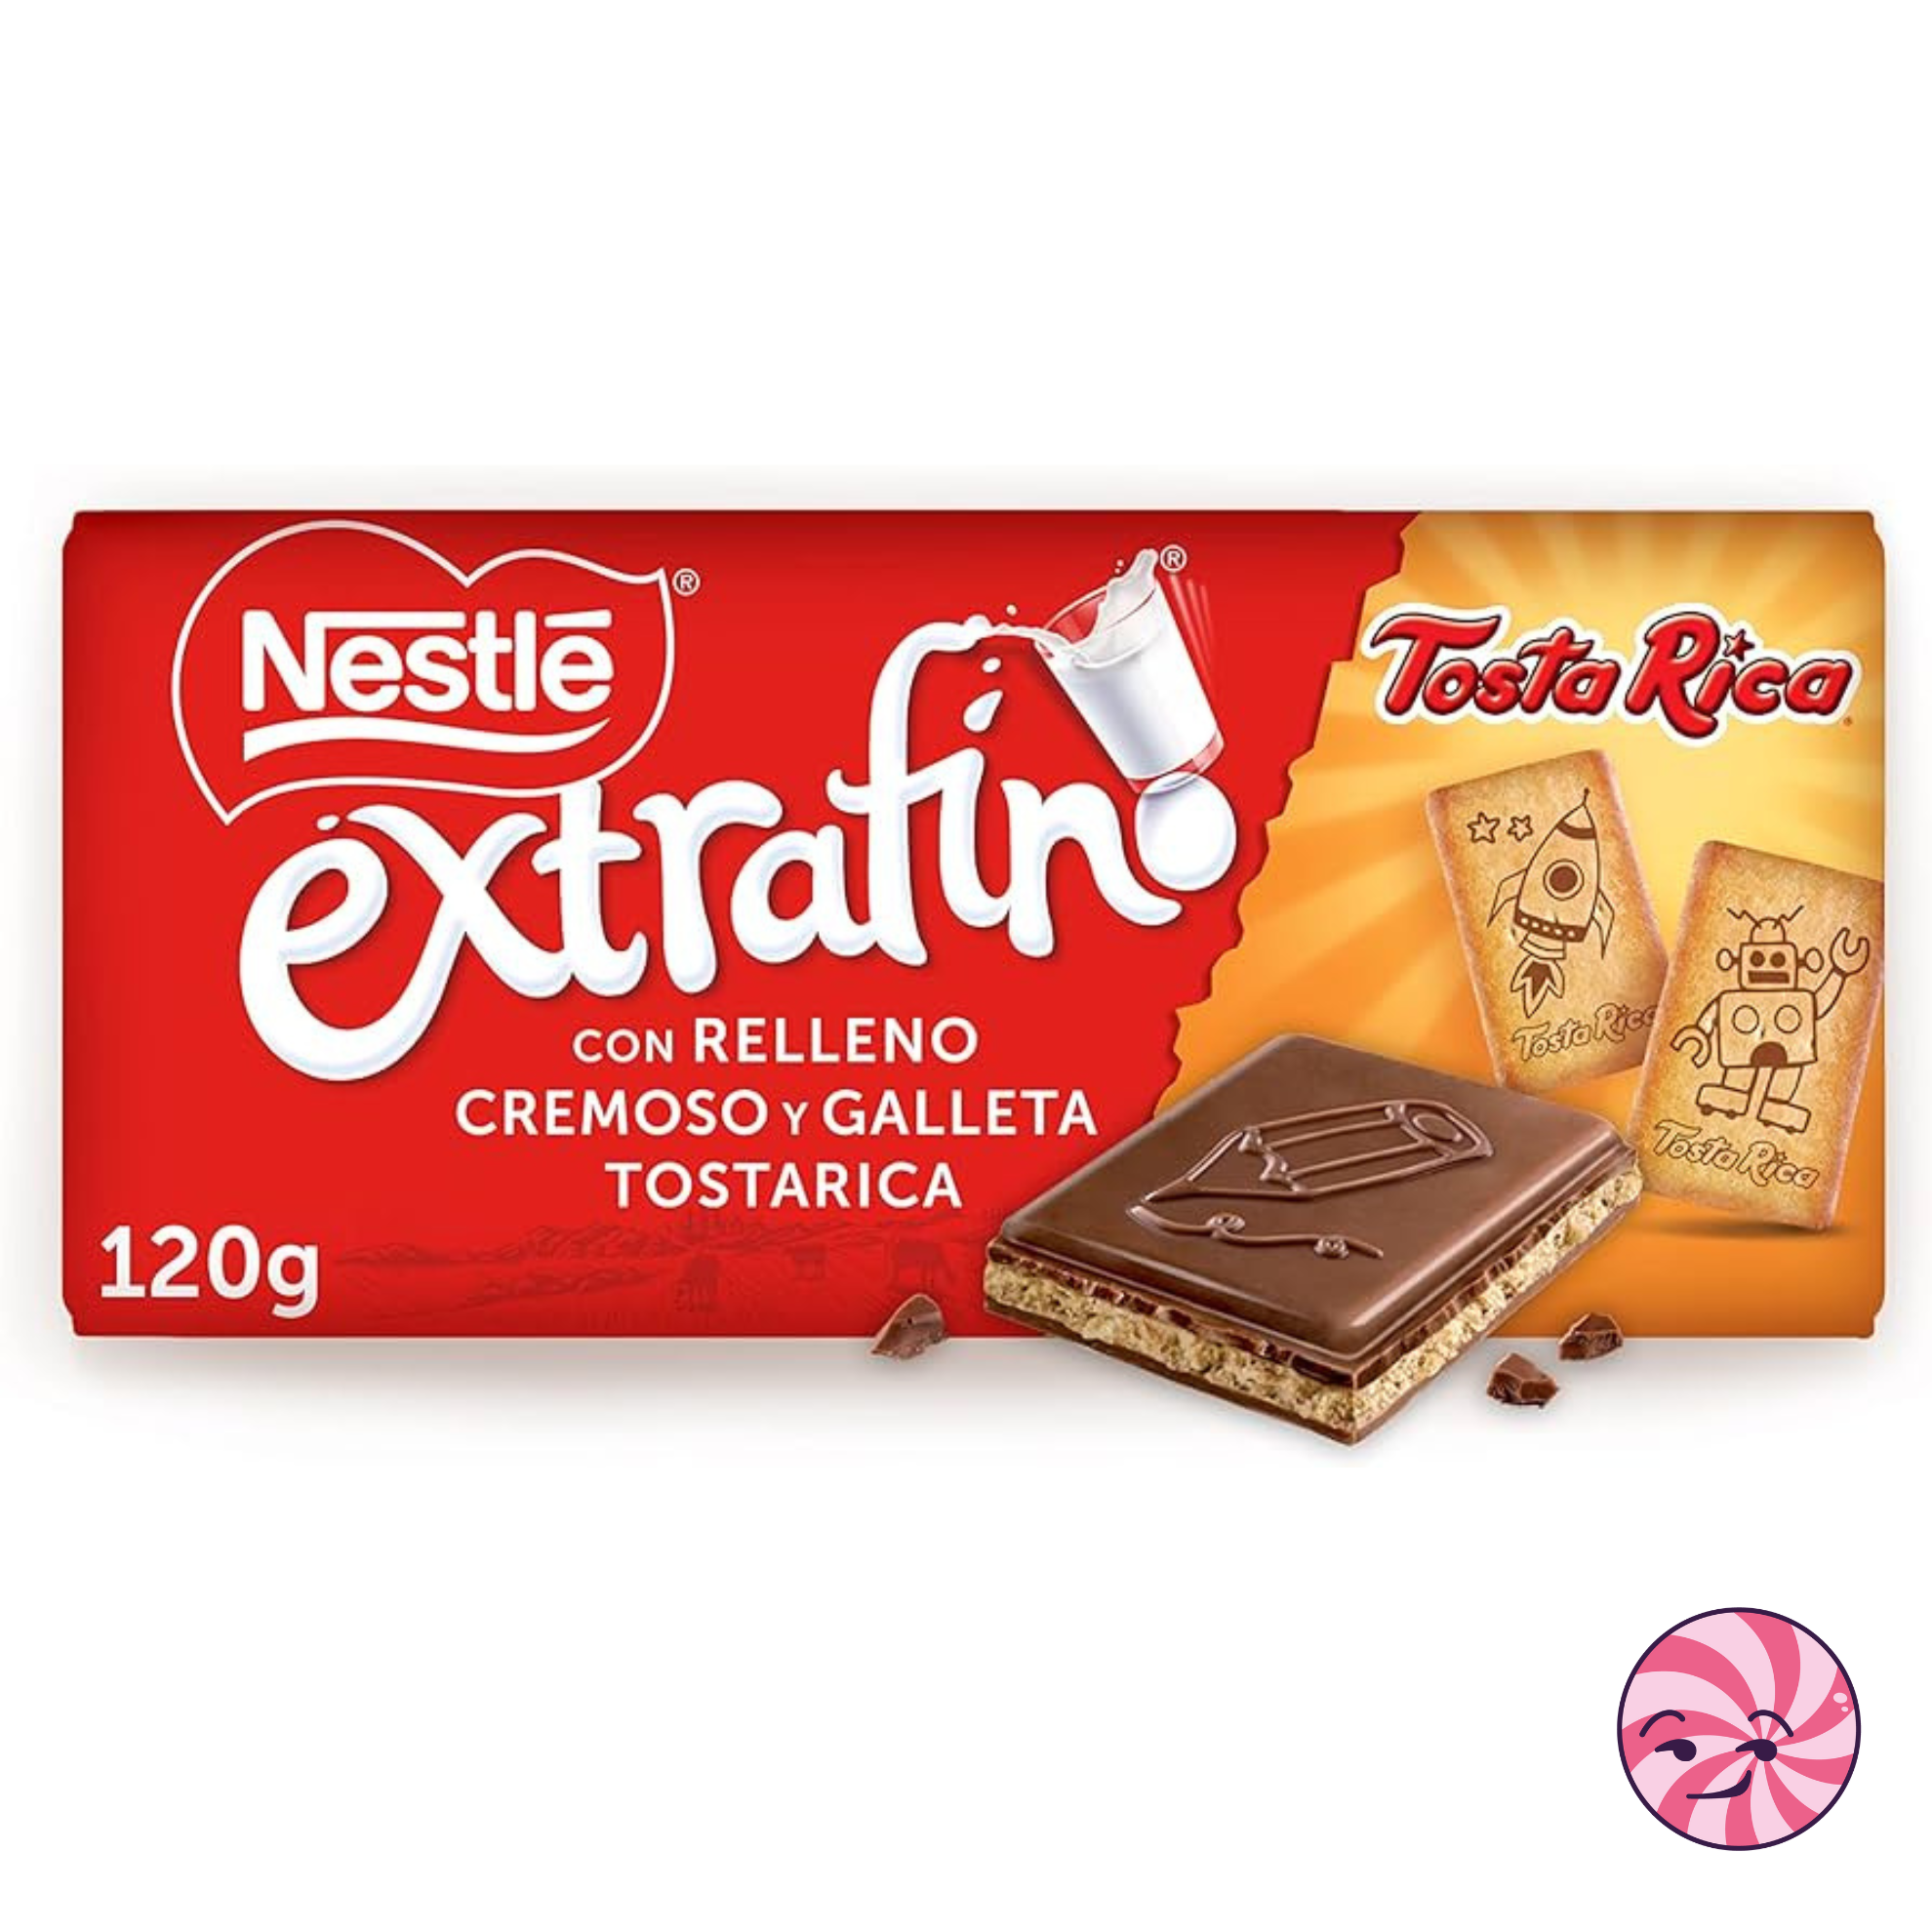 Nestlé extrafino TostaRica – La Pepa Chuches